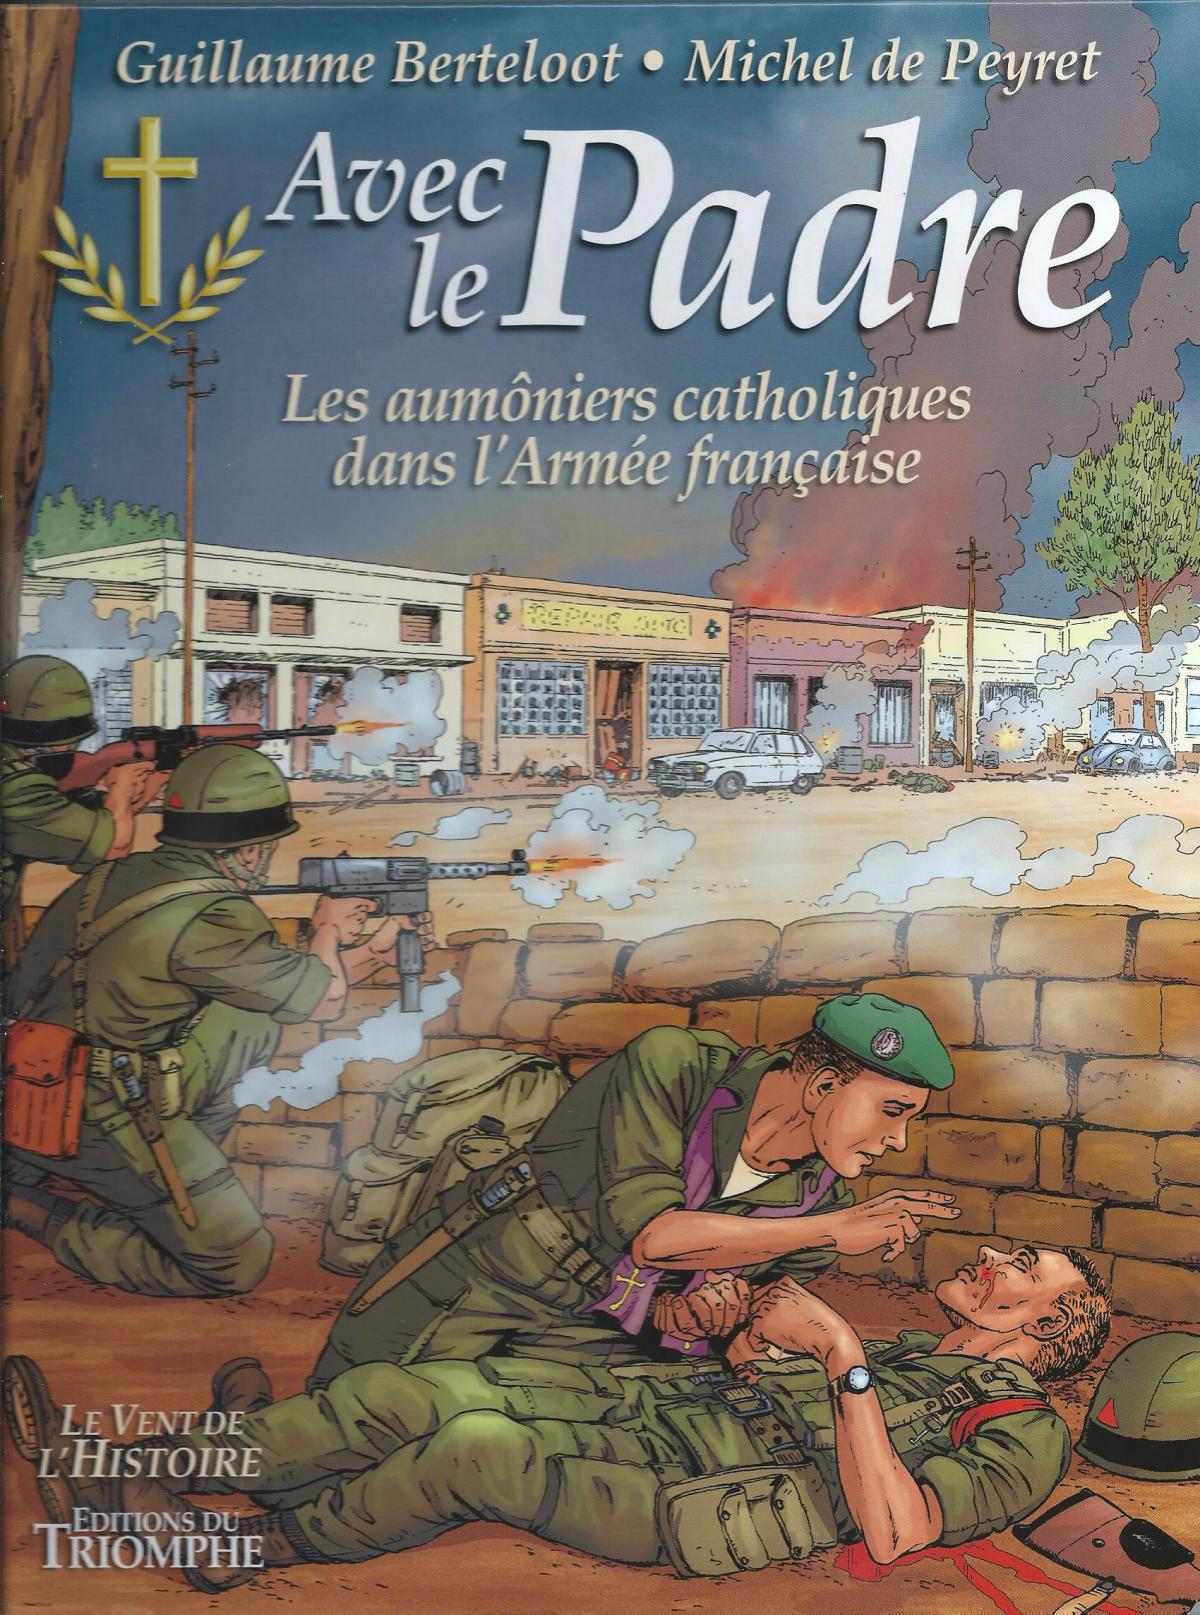  Avec le Padre, les aumôniers catholiques dans l'Armée française